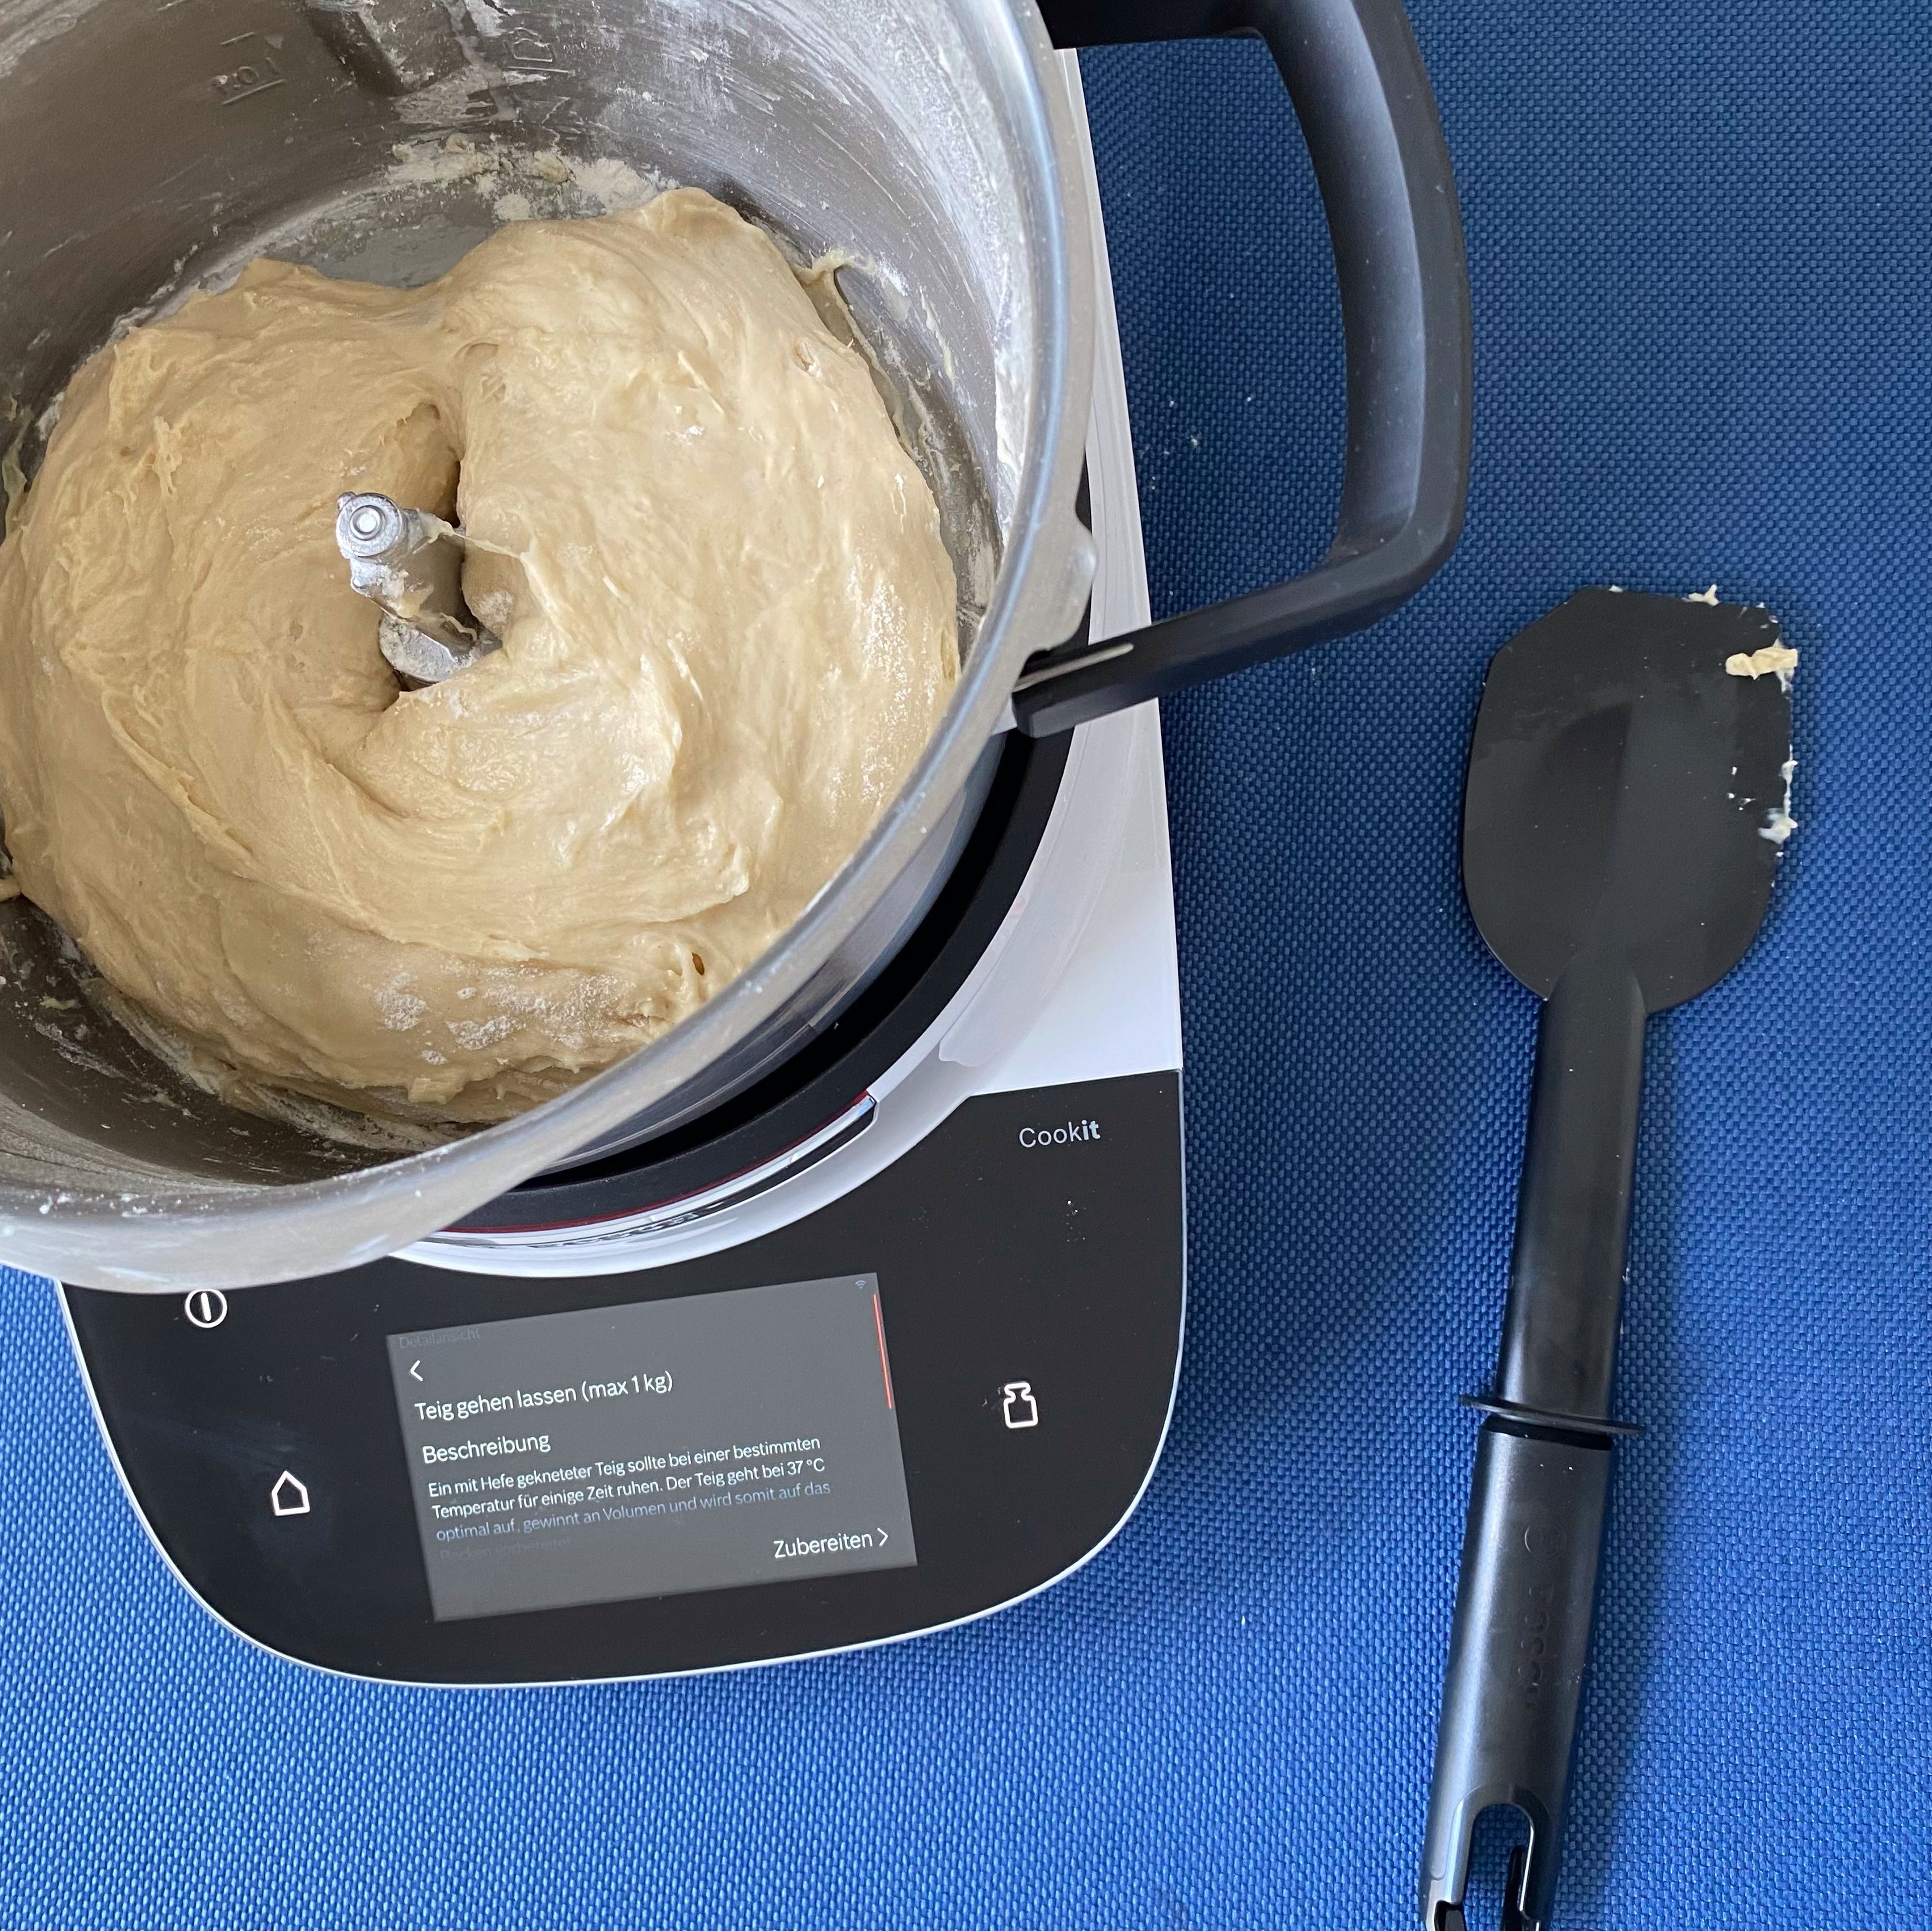 Cookit Universalmesser entfernen. Automatikprogramm 'Teige gehen lassen' starten und 45 Minuten gehen lassen.